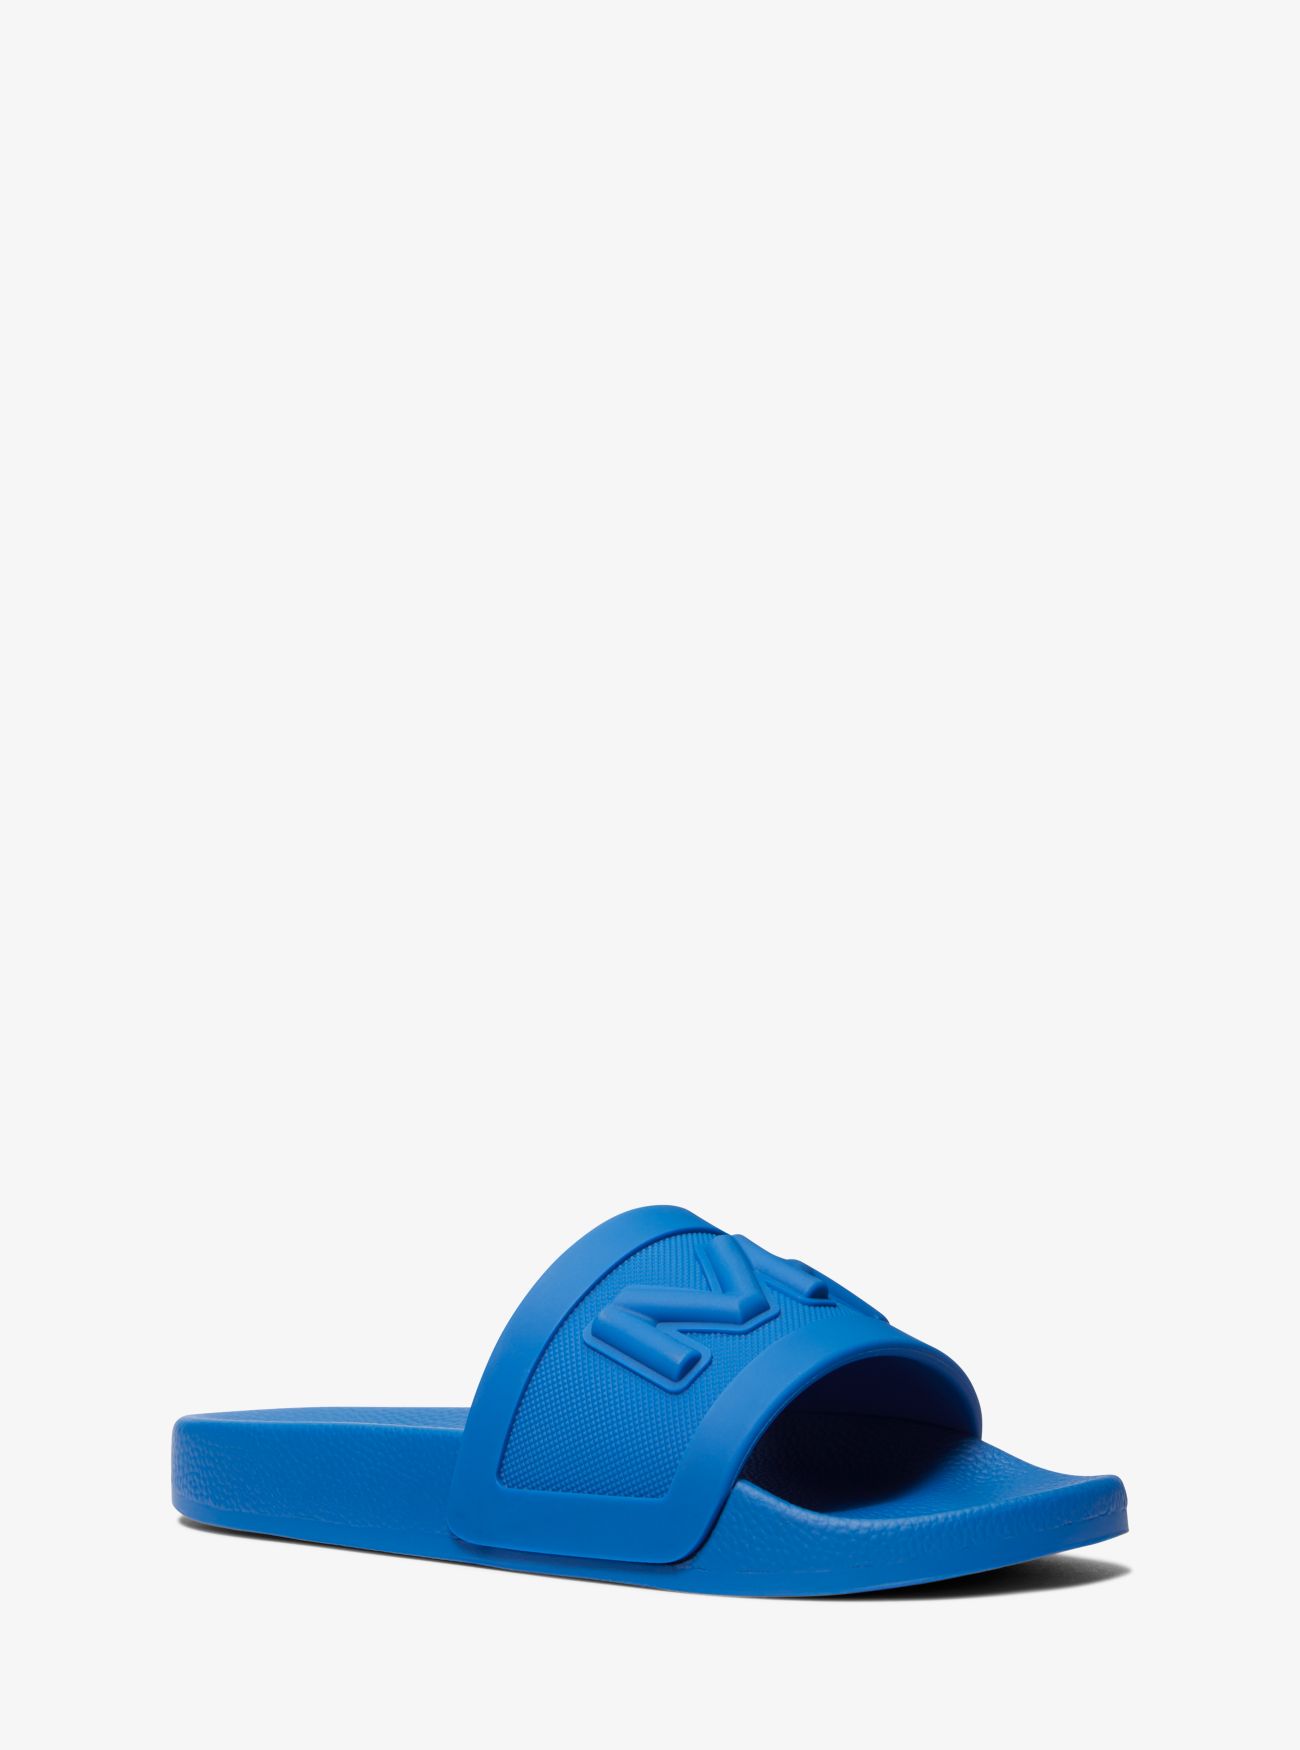 MK Jake Logo Embossed Rubber Slide Sandal - Blue - Michael Kors